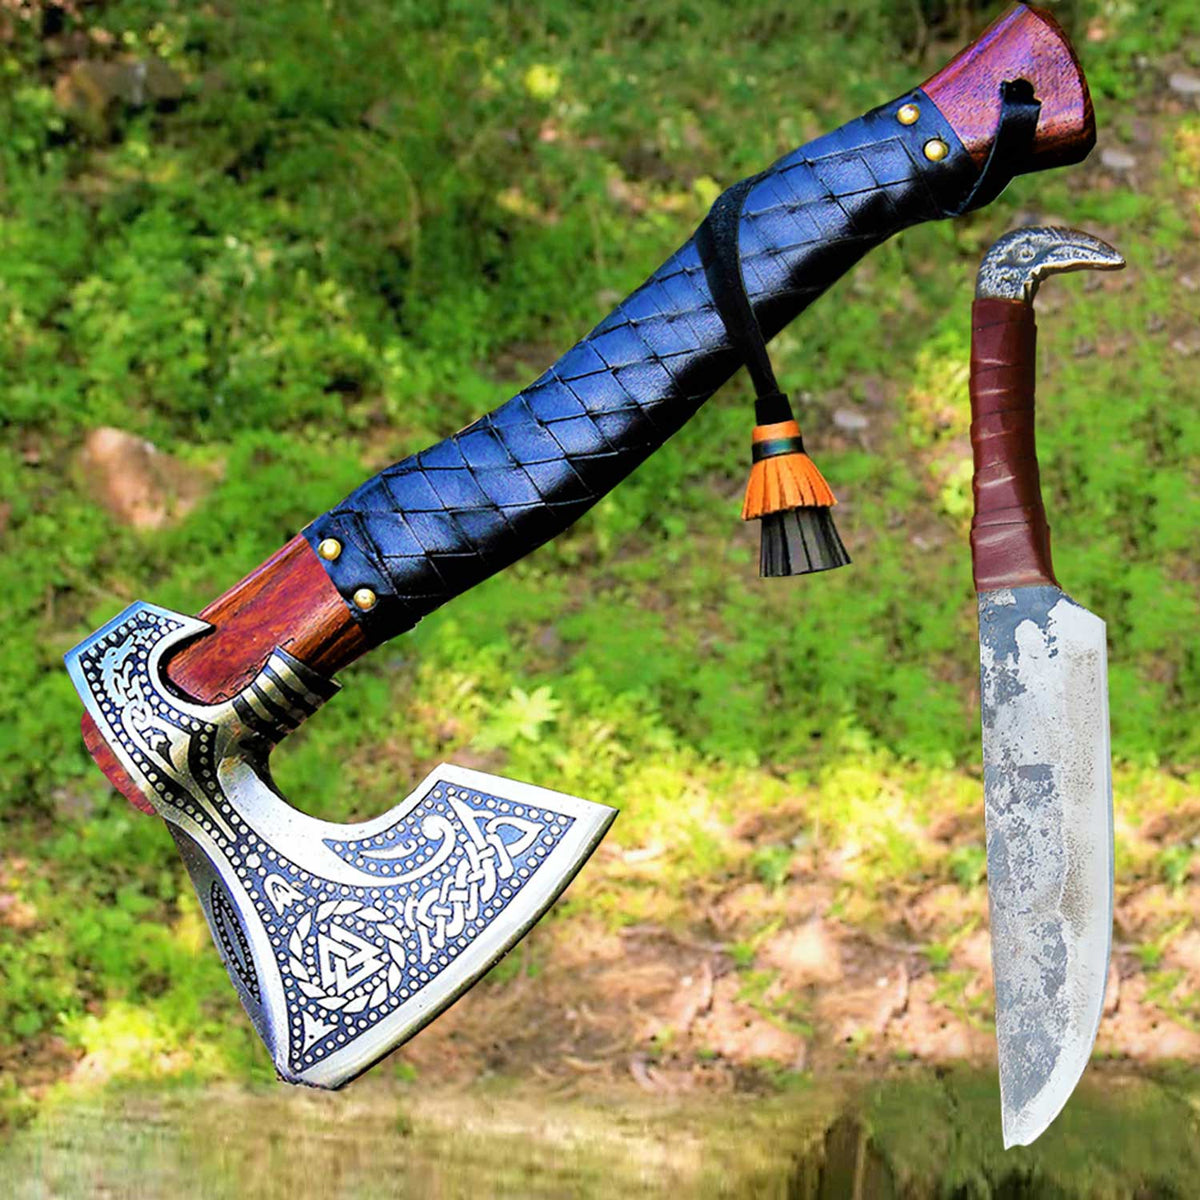 Handmade Viking Axe -- Gift Viking Knife